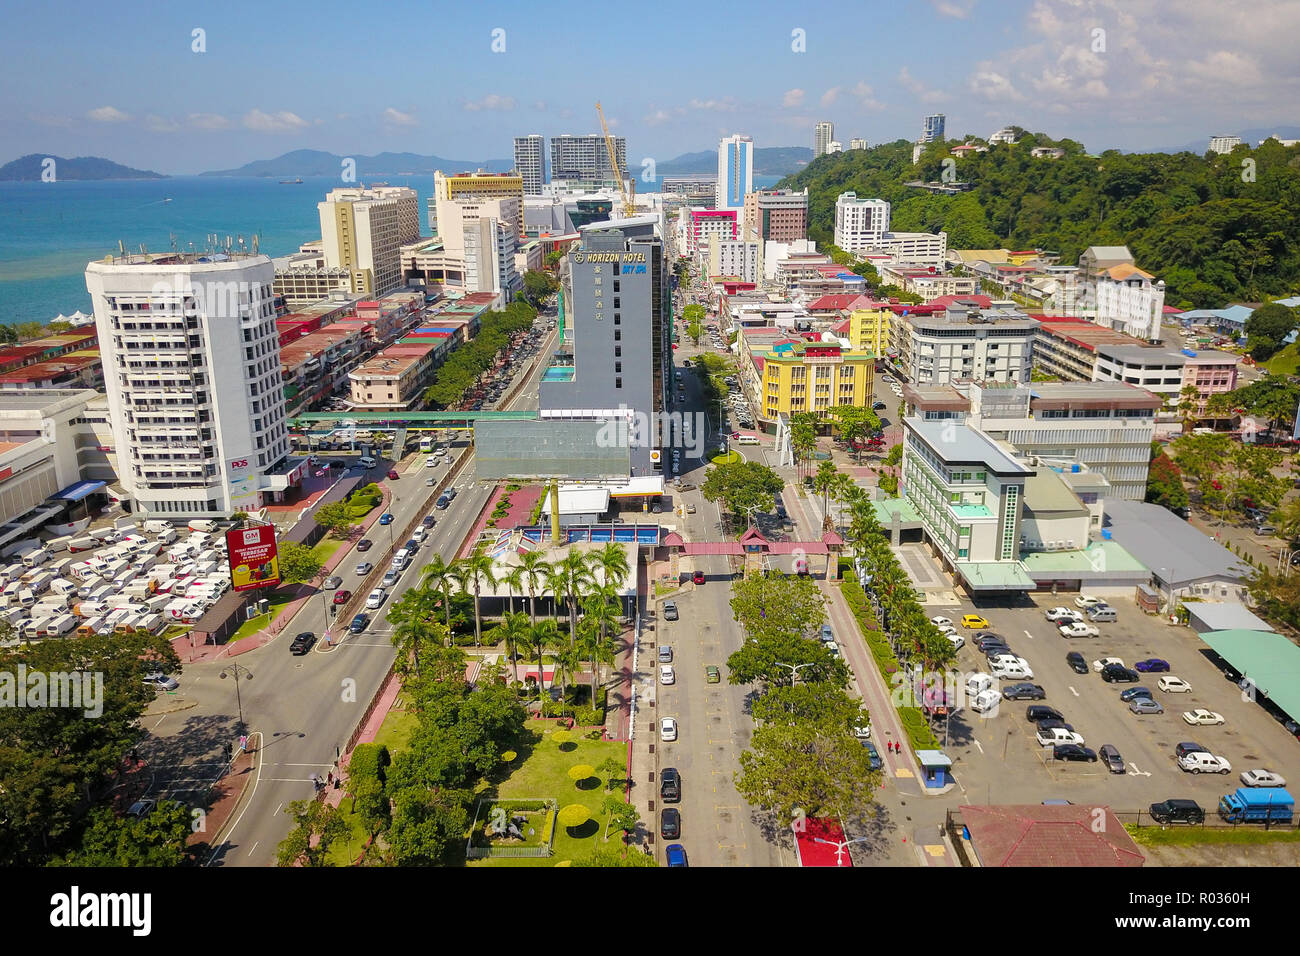 Kota Kinabalu Sabah Malaysia - Oct 16, 2018 : Partial view of Kota